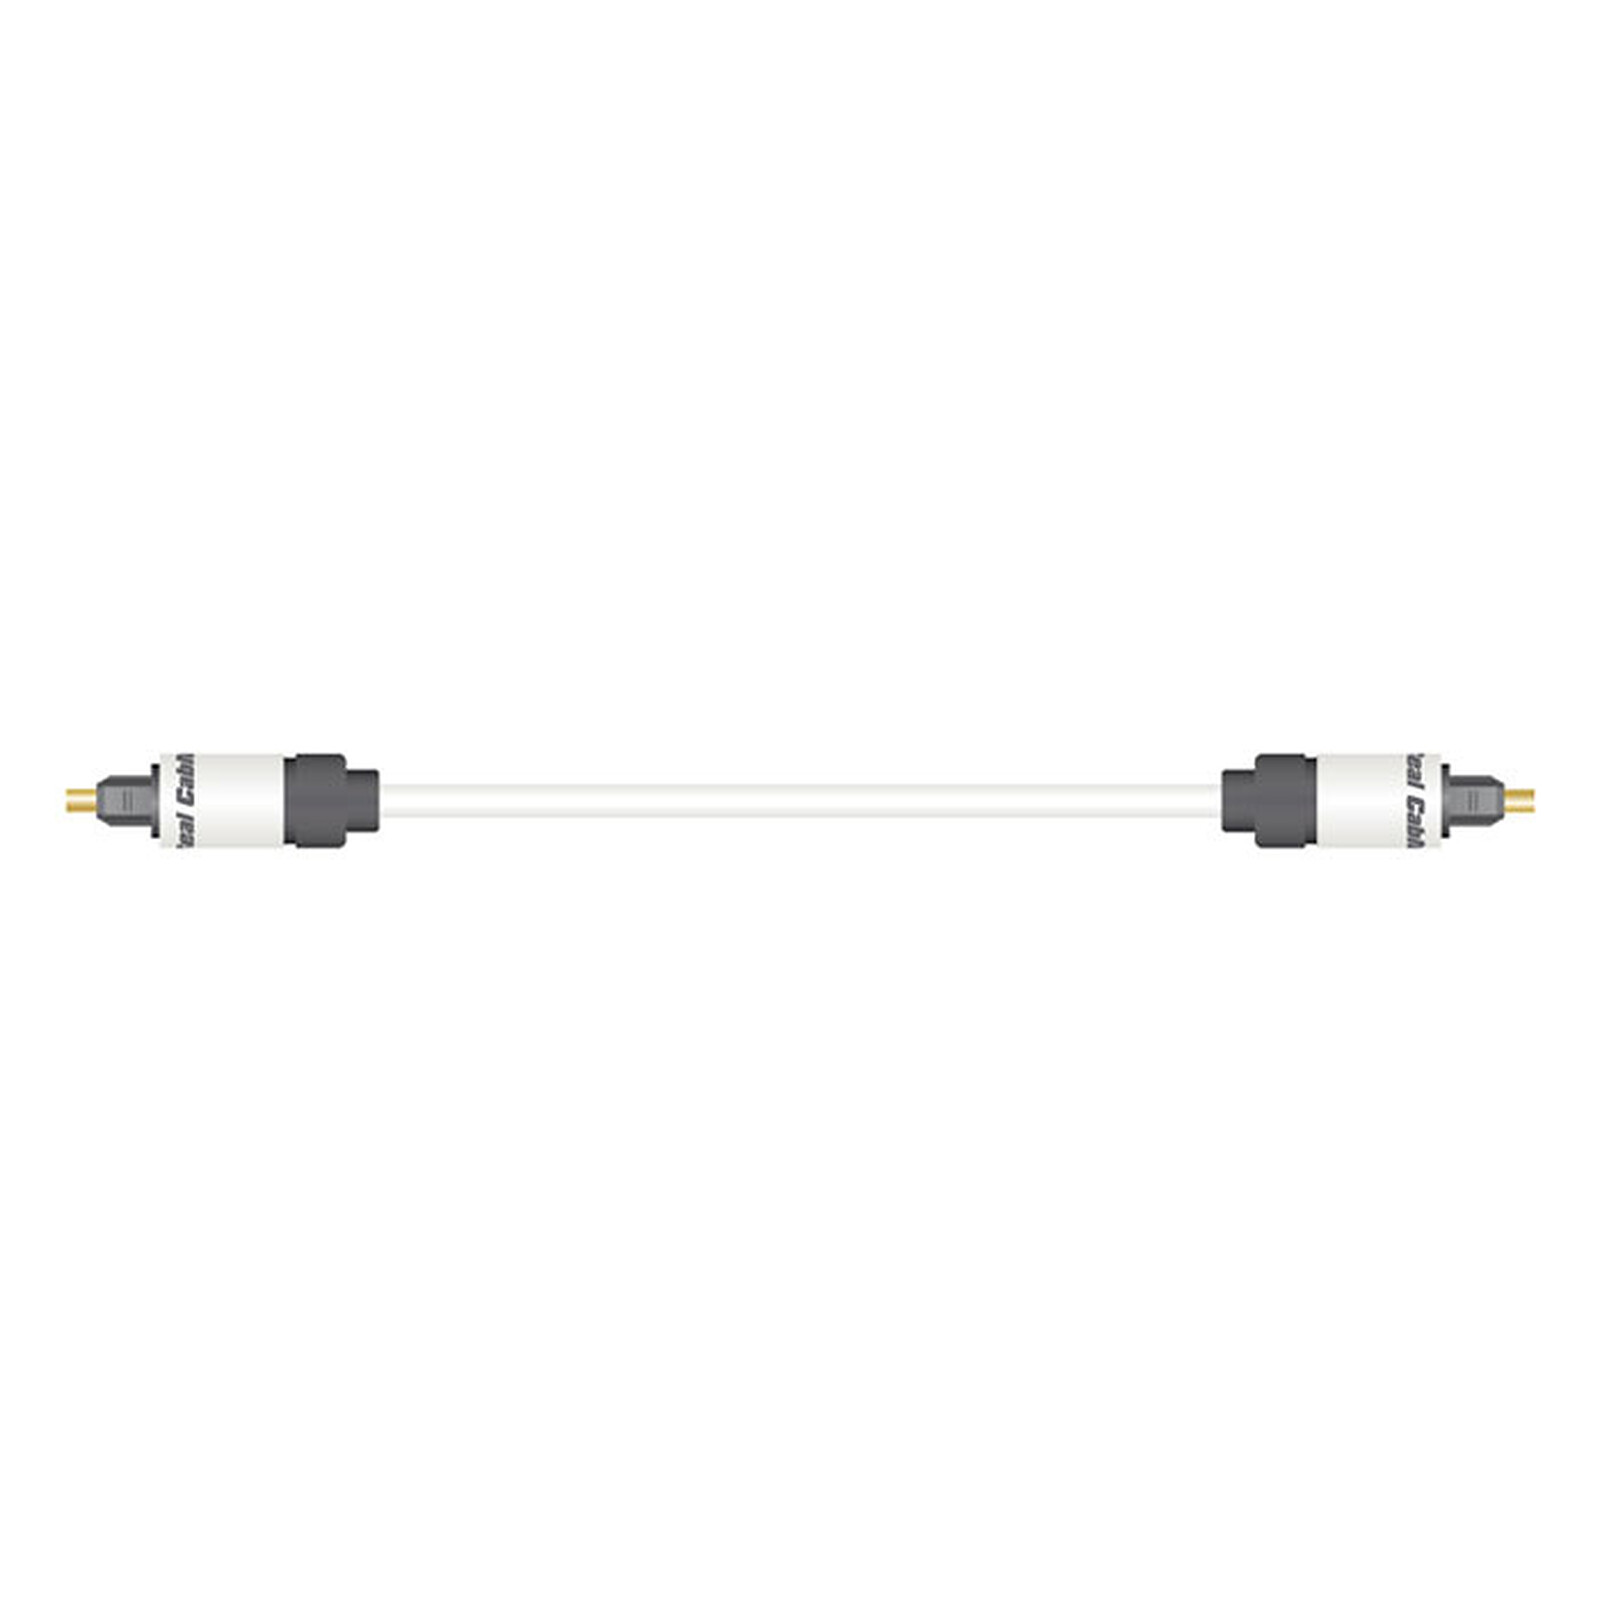 Real Cable OPT-1 5m - Câble audio numérique - Garantie 3 ans LDLC